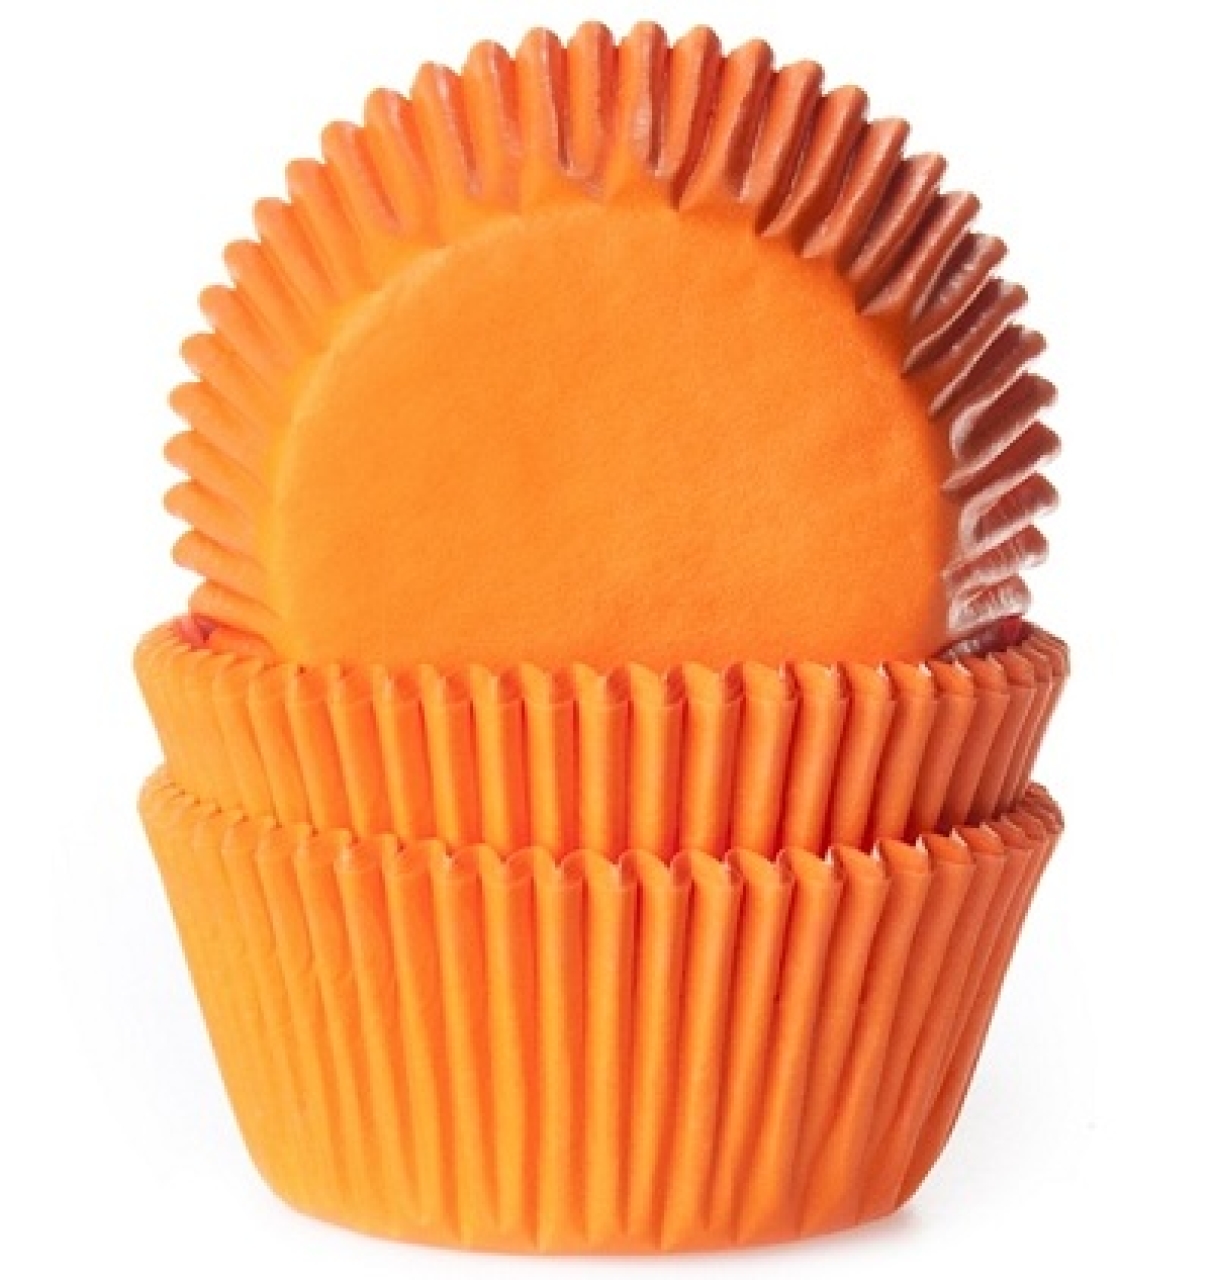 HoM Muffinförmchen, Orange, 50 Stck, 5,0 cm